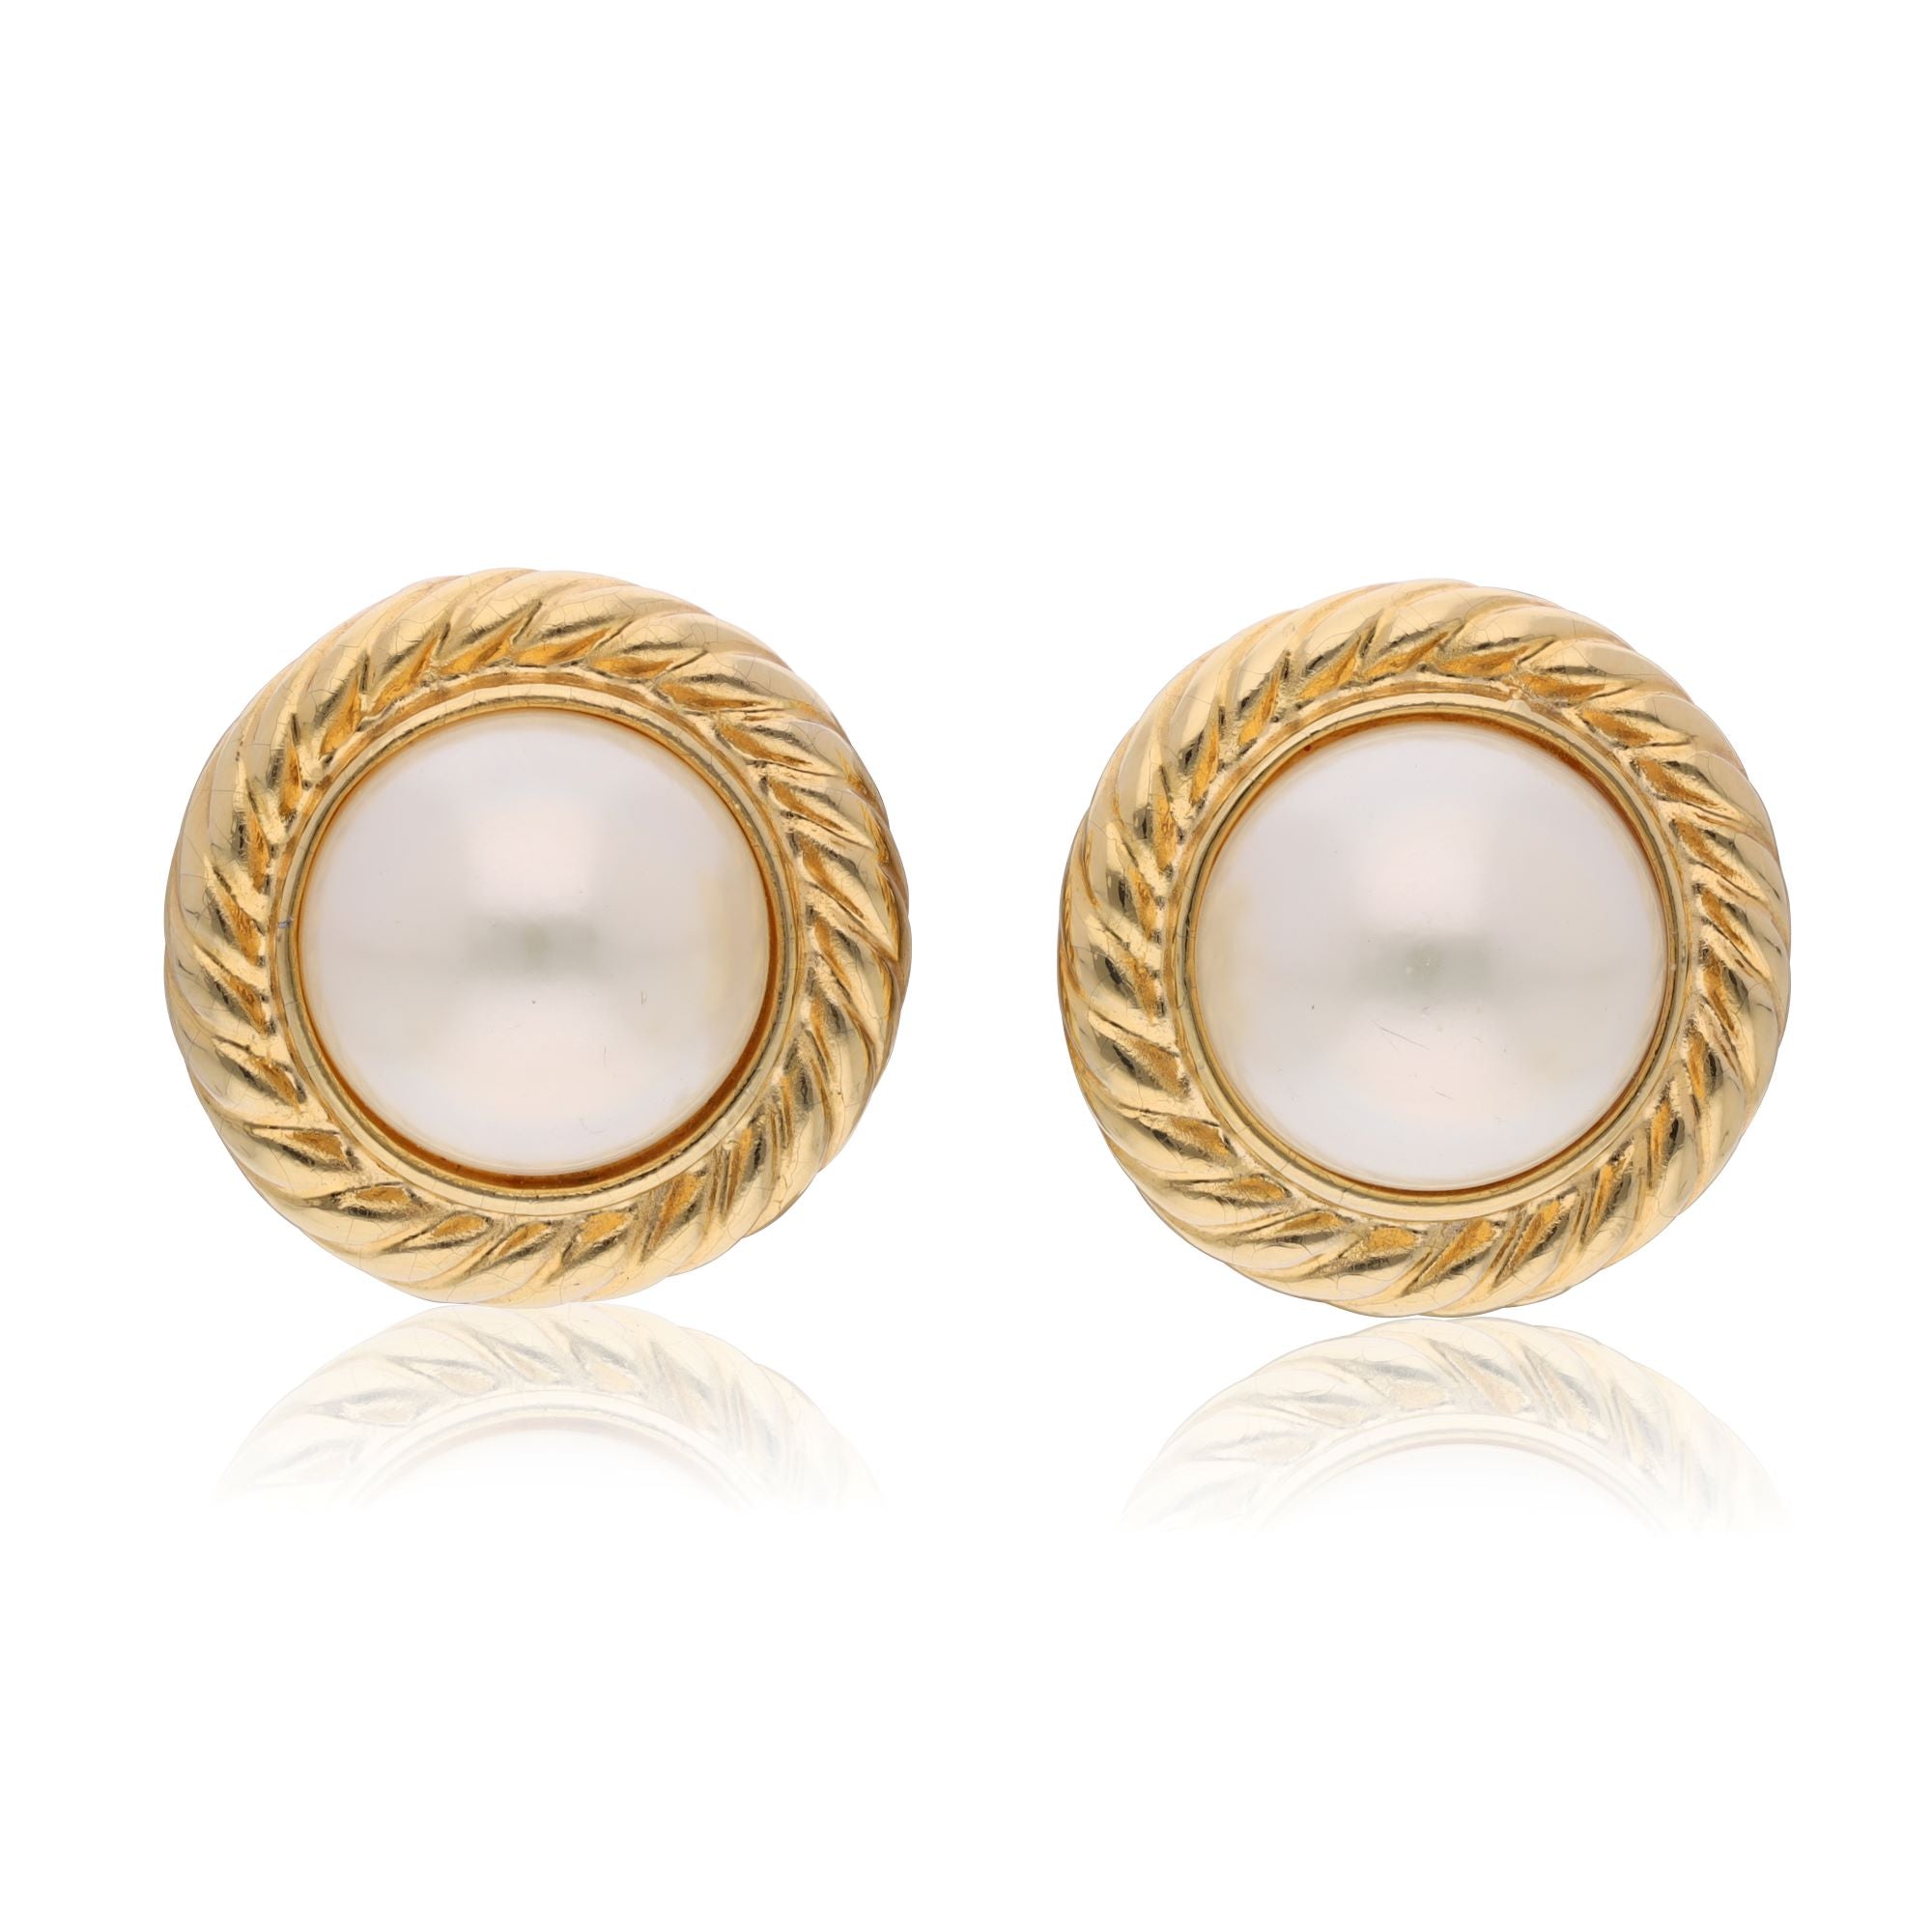 Vintage faux pearl button earrings 